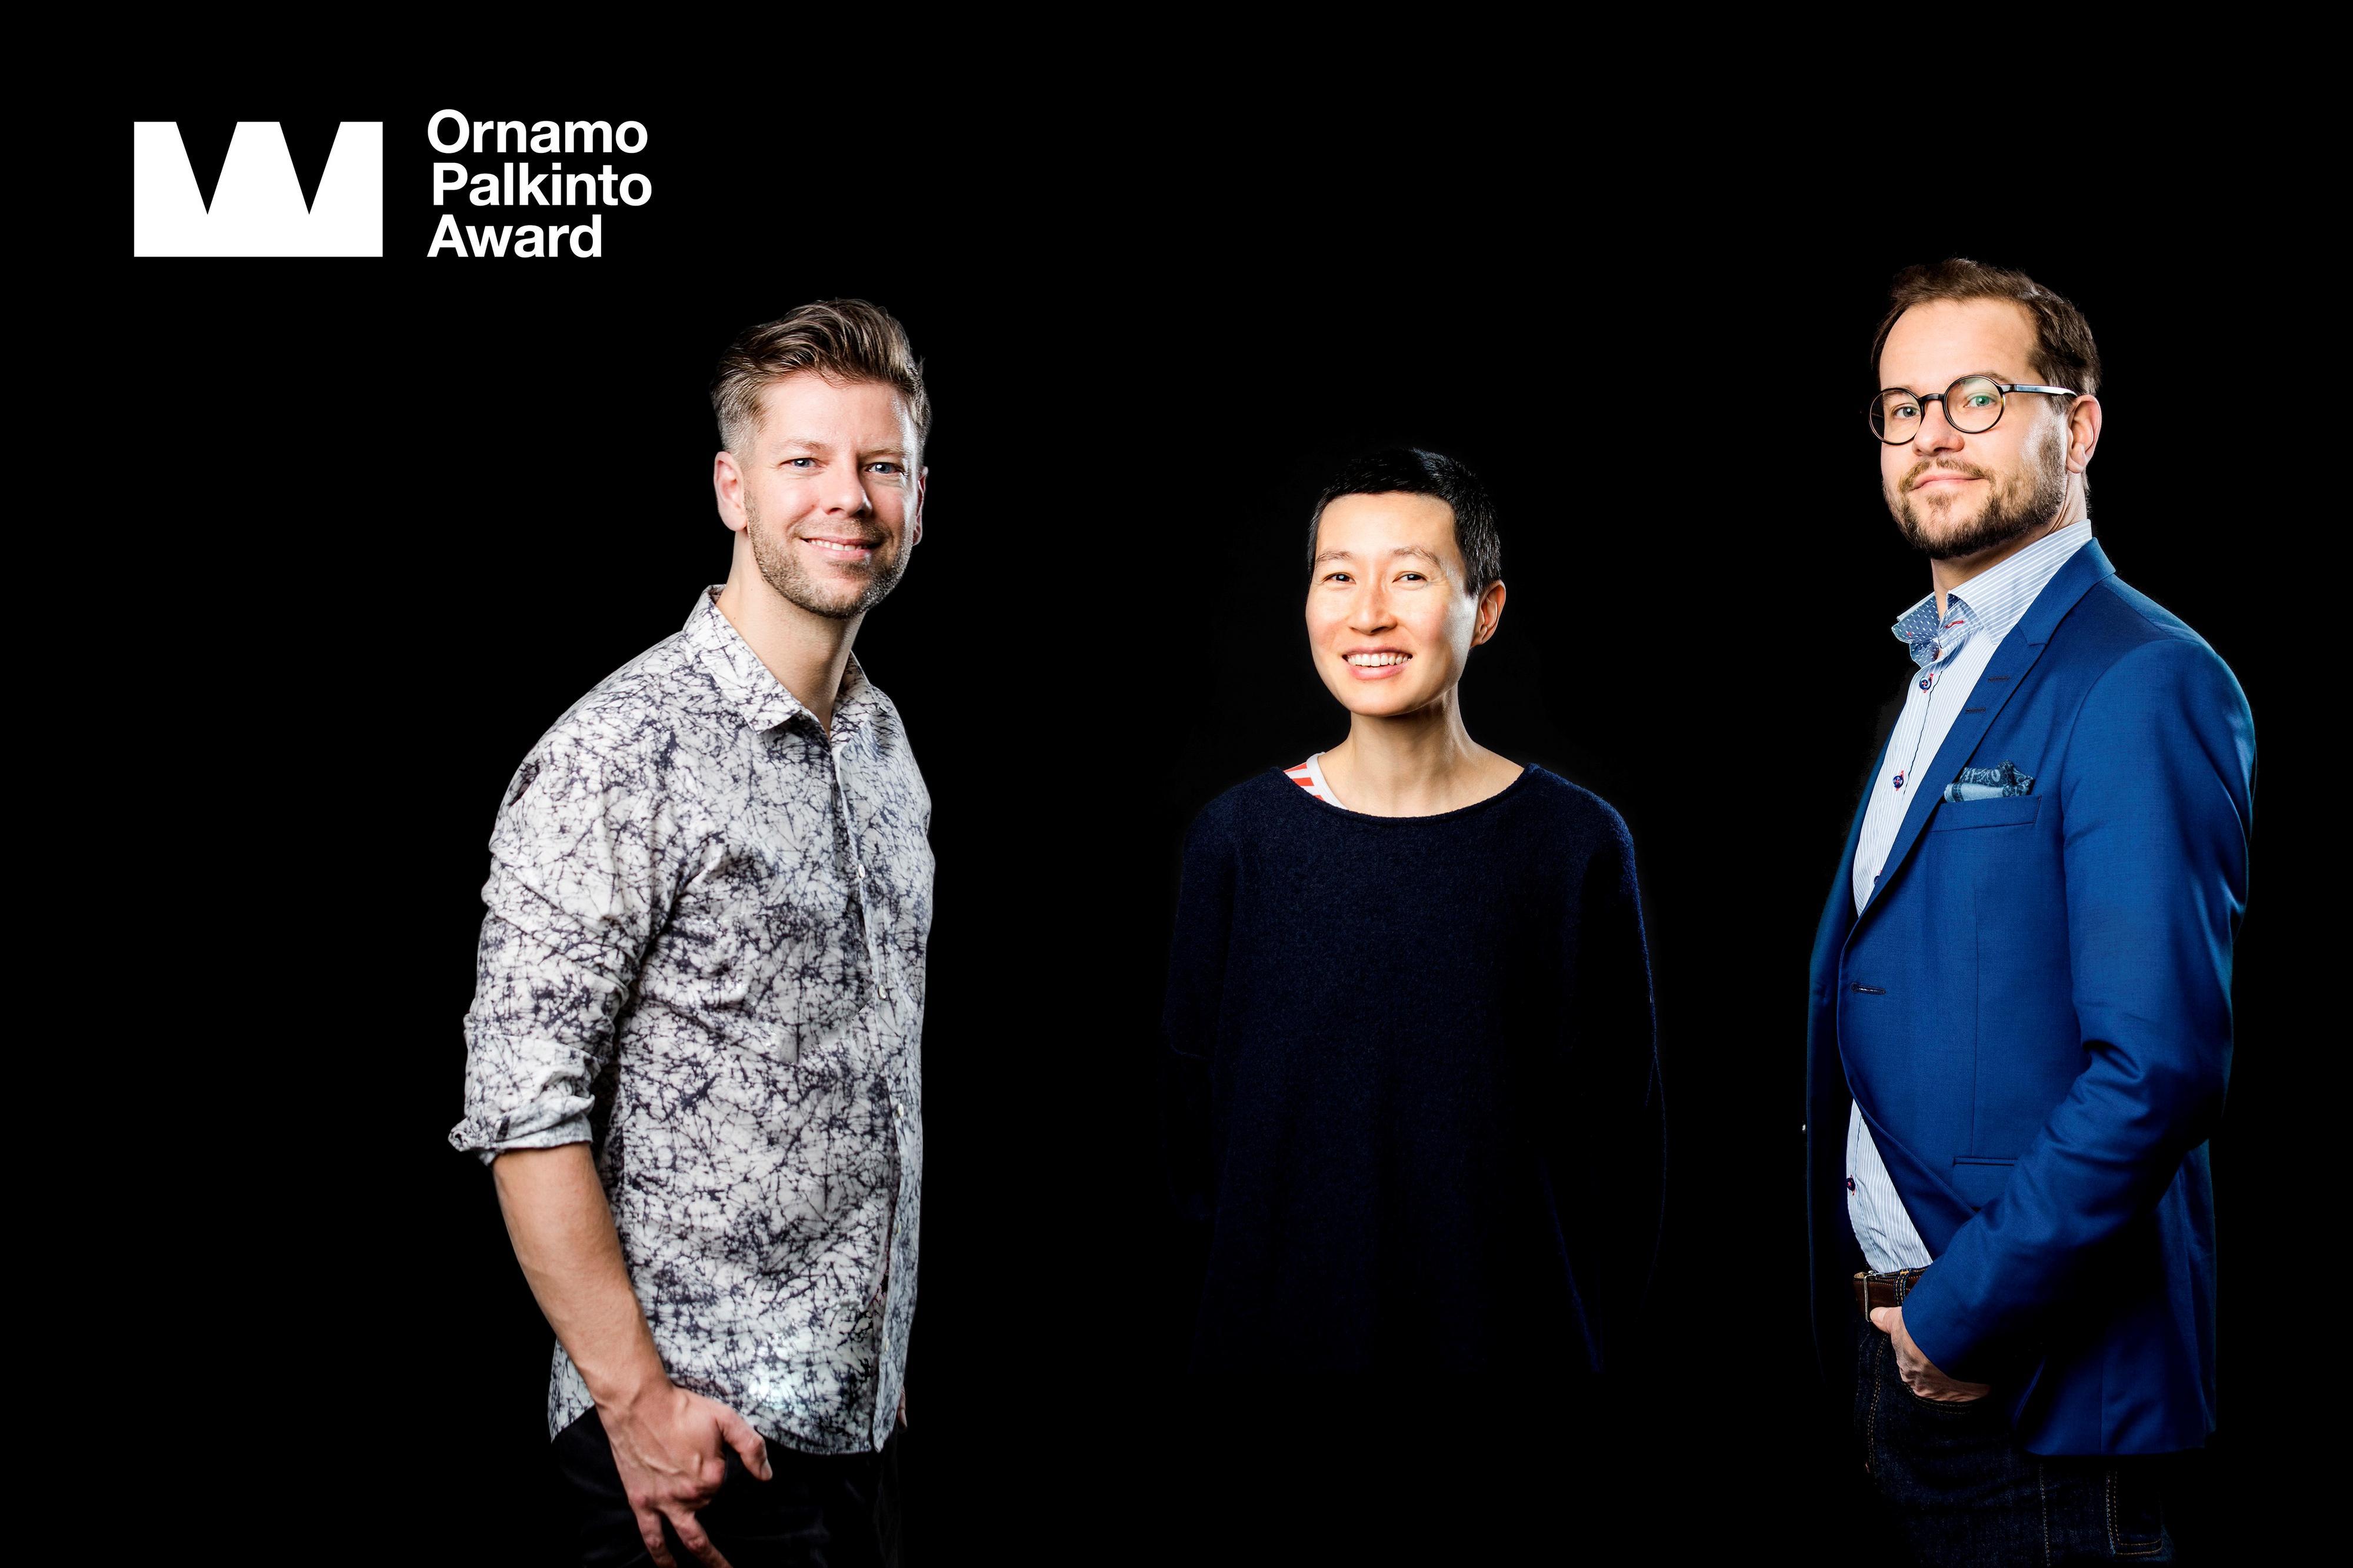 Ornamo-palkinto 2017. Ehdokkaat Mikko Koivisto, Aamu Song ja Antti Olin. Kuva Anni Koponen.